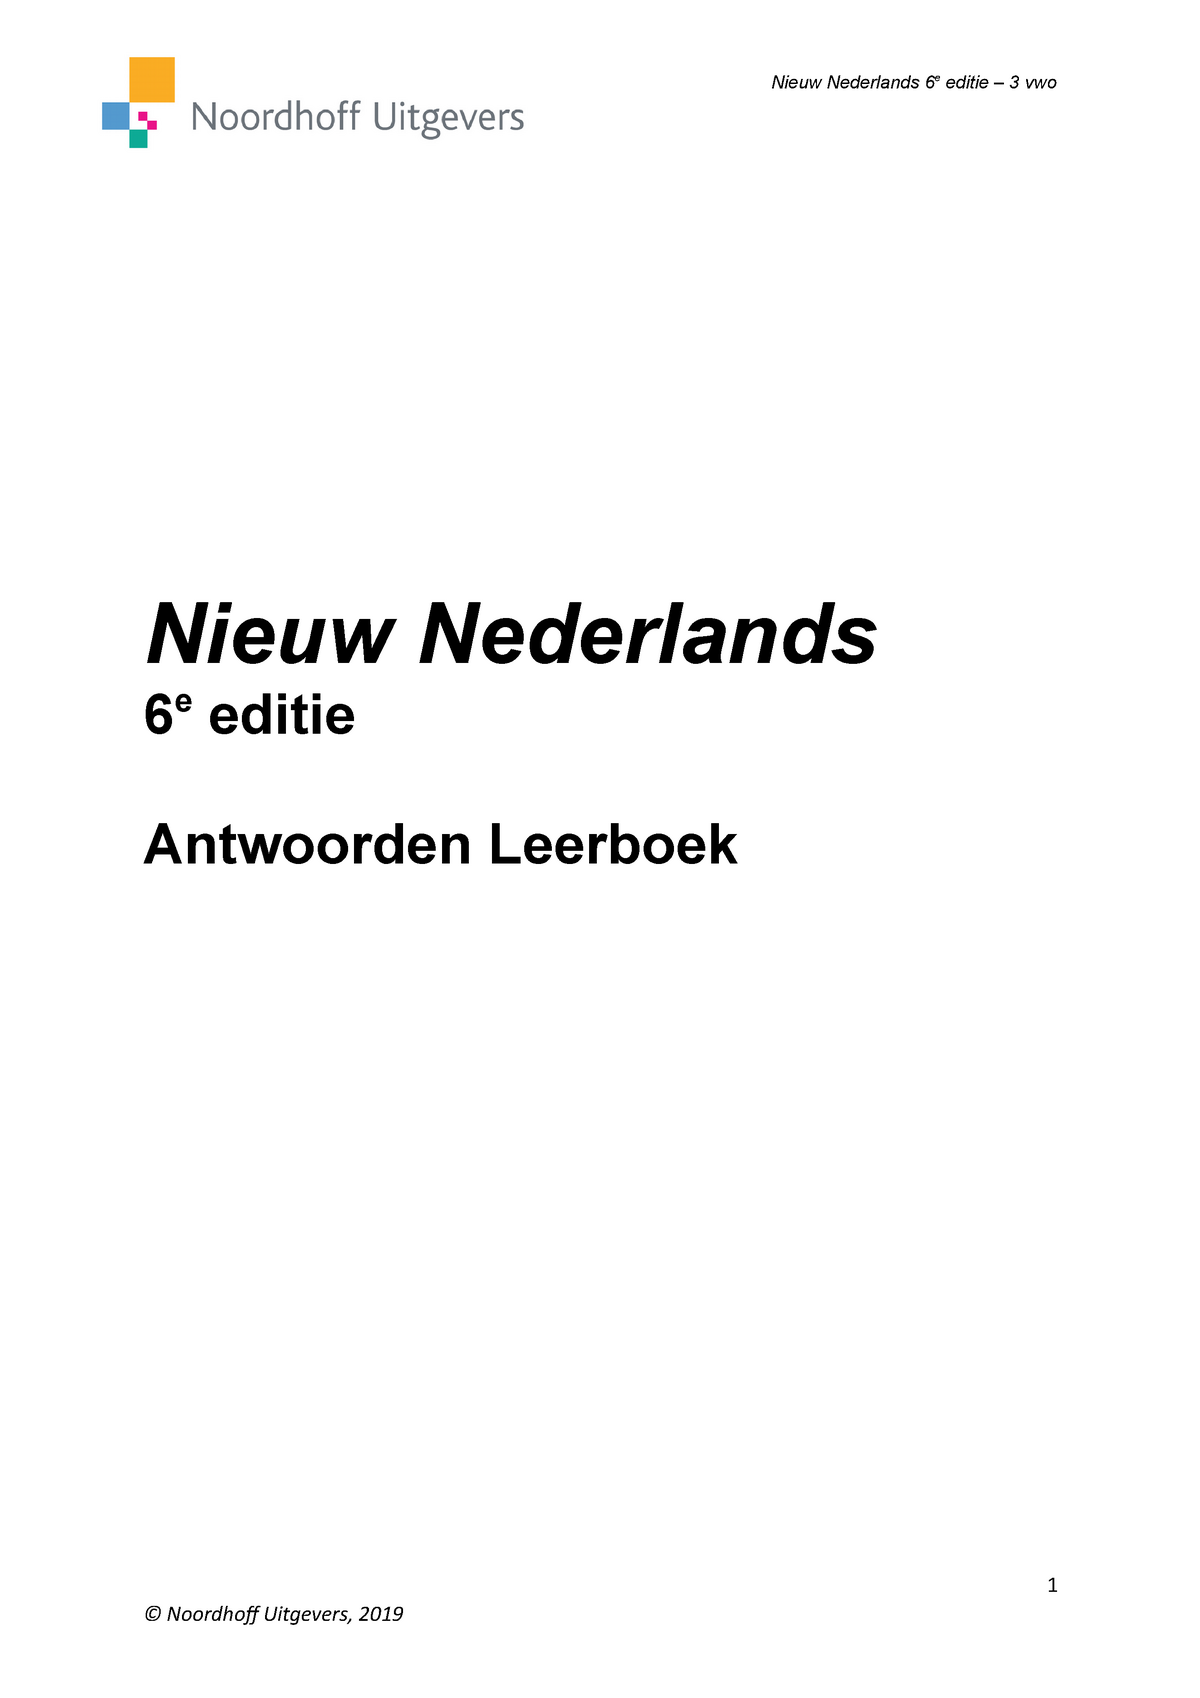 Naar de waarheid Vriendelijkheid Tablet Nn6-3vwo-antwoorden - Nieuw Nederlands 6 e editie Antwoorden Leerboek 1 3  vwo + Hoofdstuk - Studeersnel